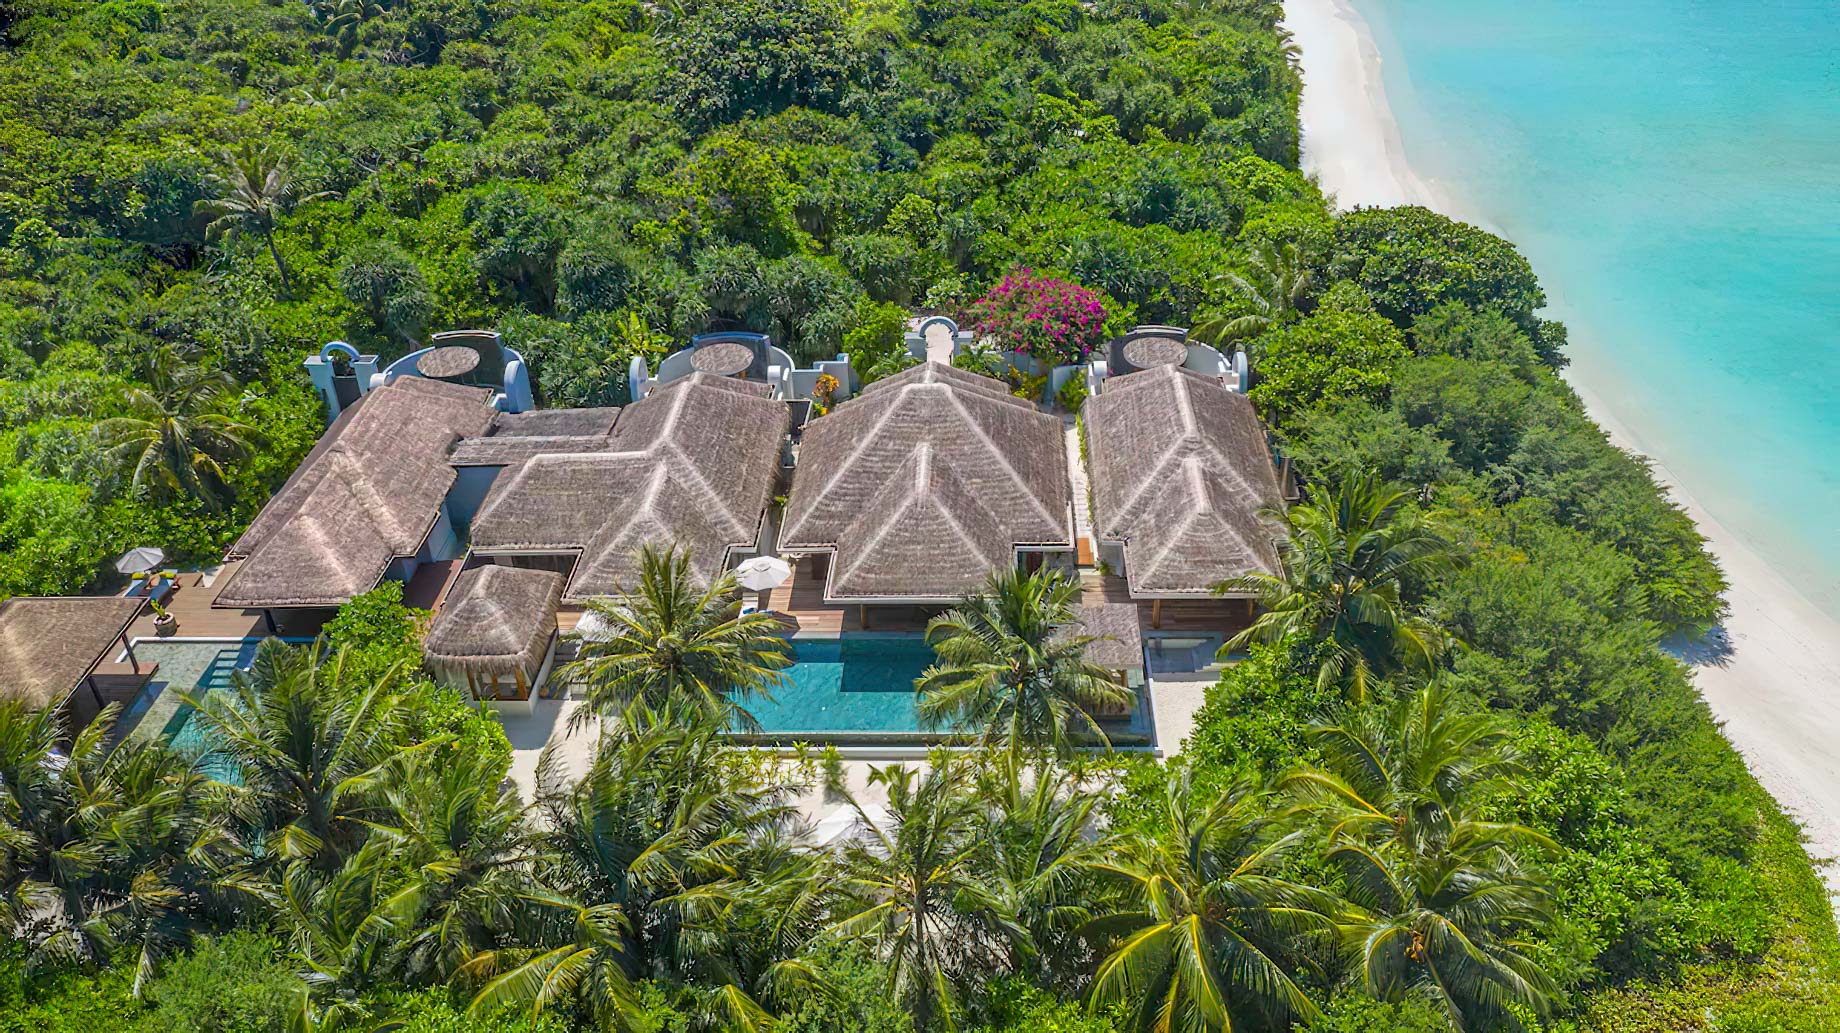 Anantara Kihavah Maldives Villas Resort – Baa Atoll, Maldives – Four Bedroom Beach Pool Residence Aerial View